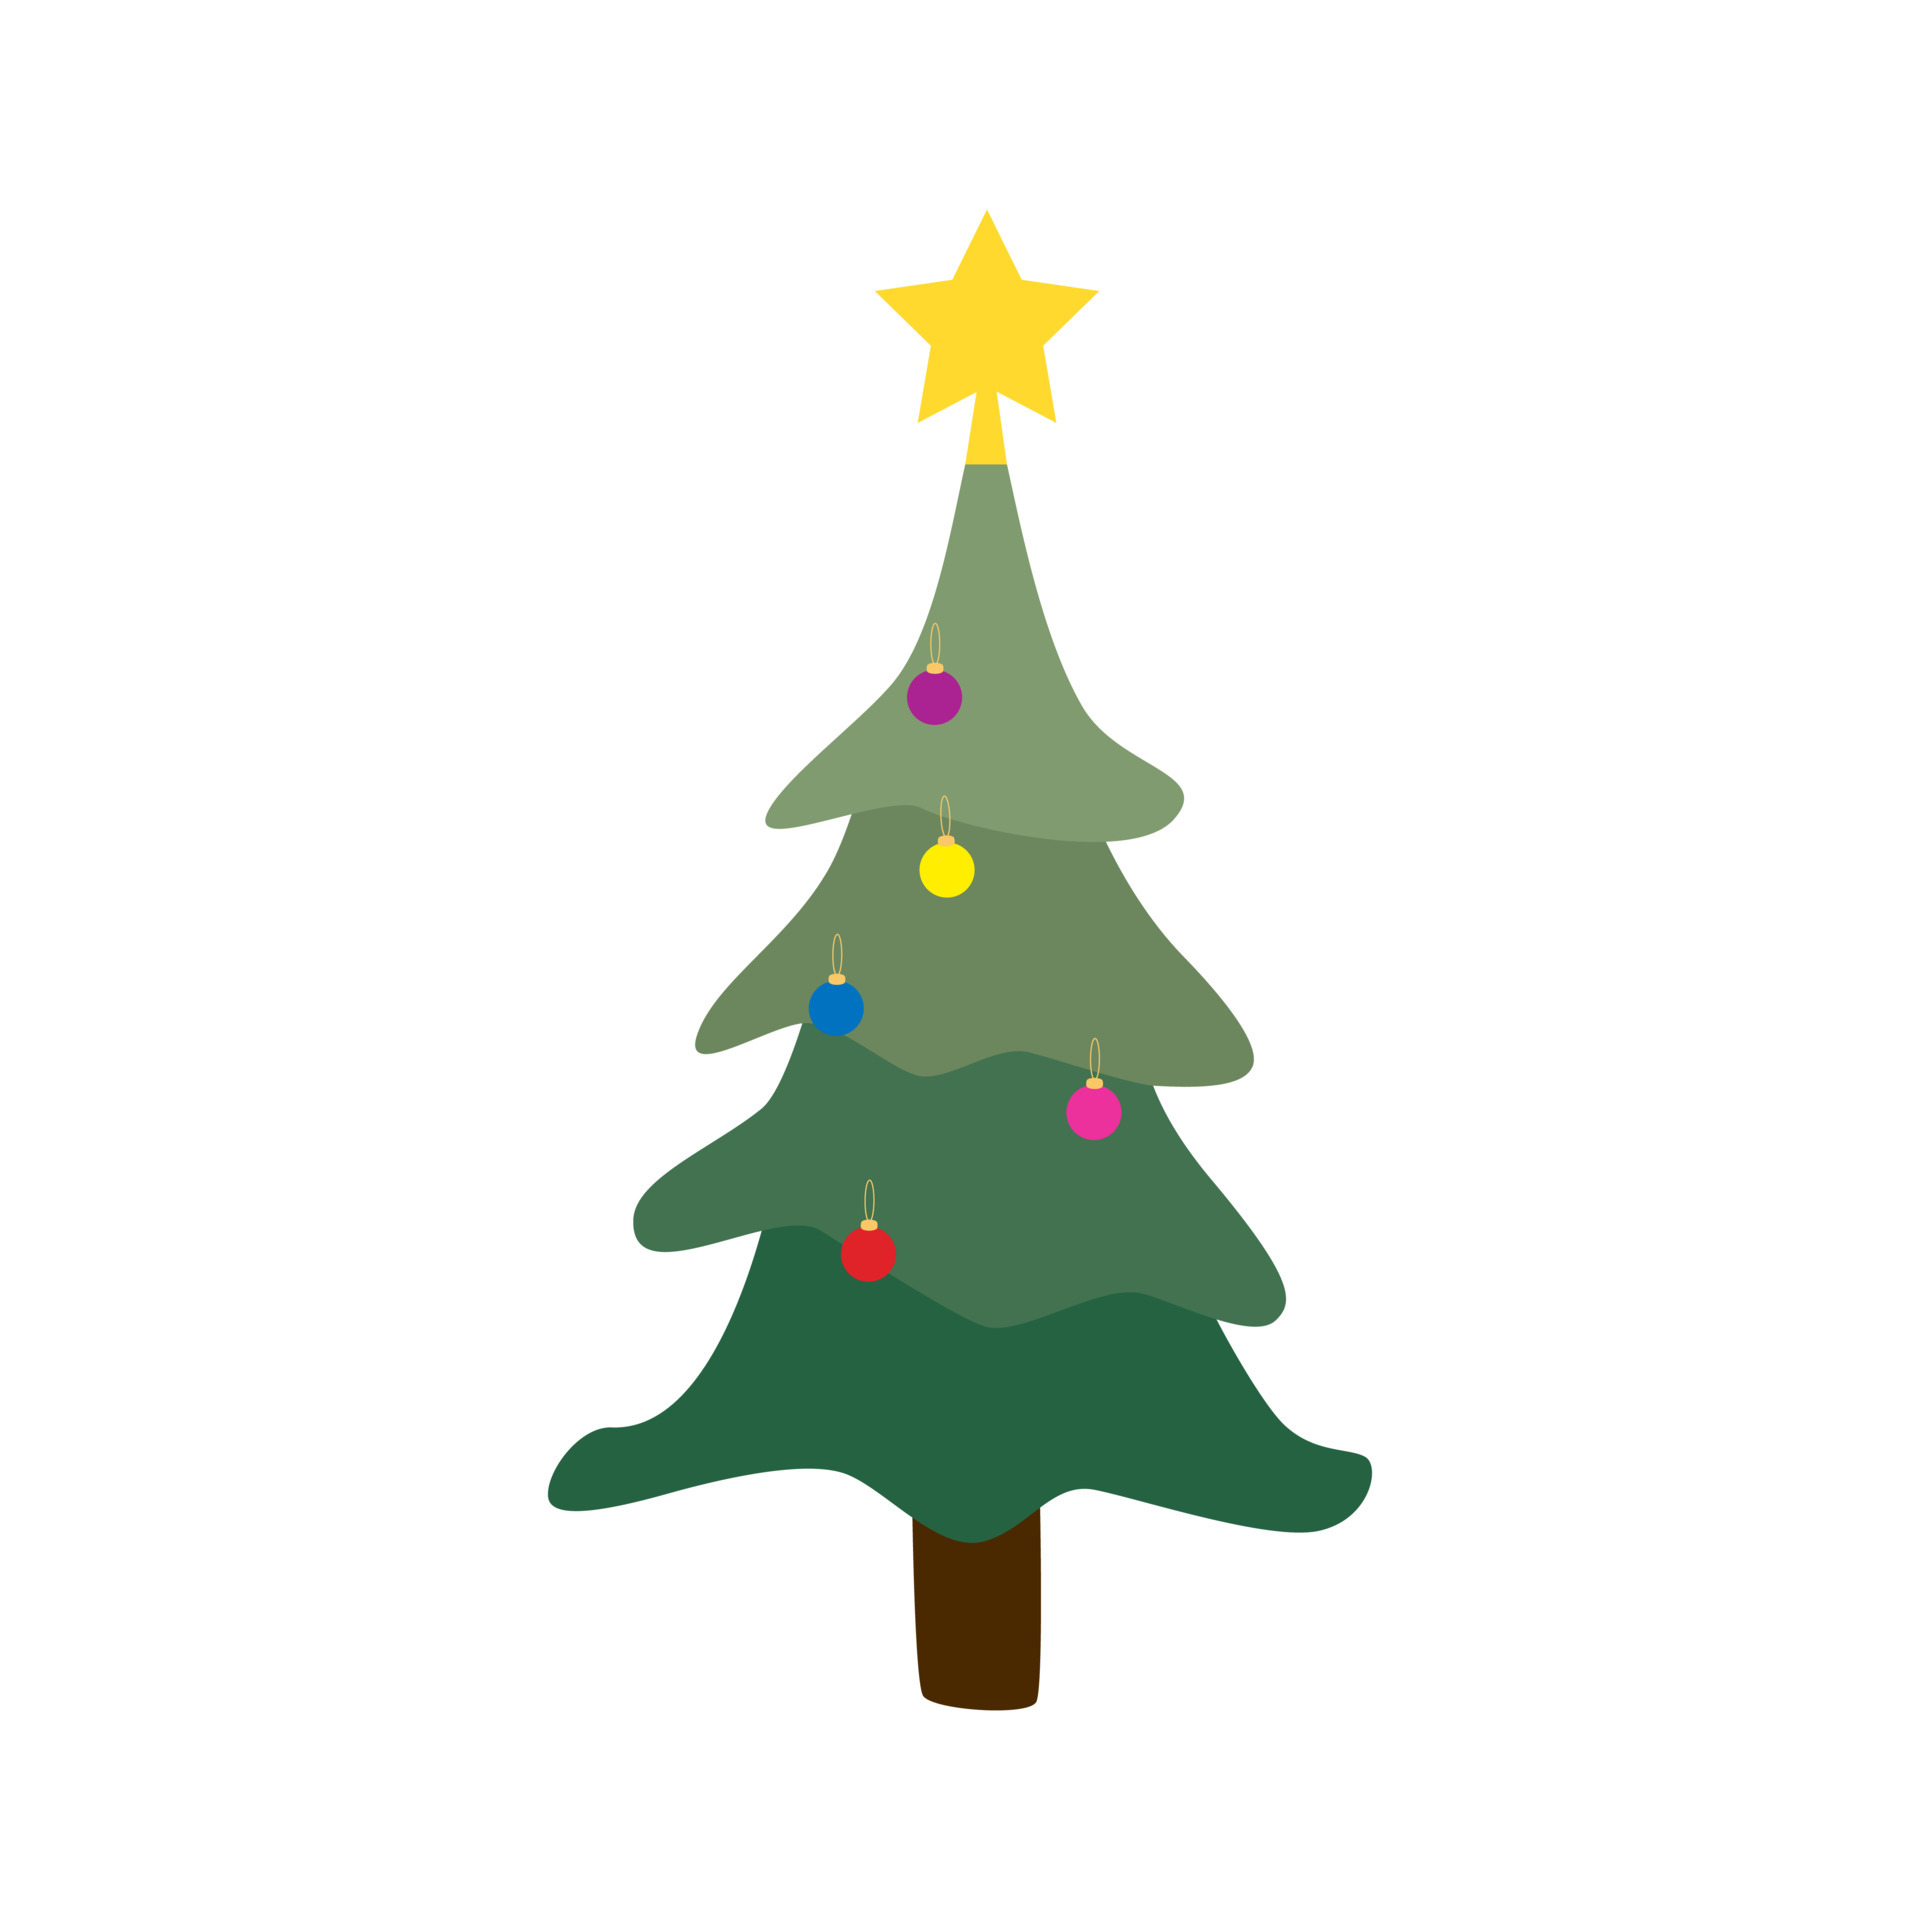 Tận hưởng không khí Giáng sinh ấm áp và truyền cảm hứng cho mọi người cùng cây thông Giáng sinh đầy sắc màu và chất lượng tốt. Với những dải đèn màu sắc lung linh, thật khó có thể rời mắt khỏi cành cây giáng sinh thật đẹp và đầy sáng tạo như thế này!